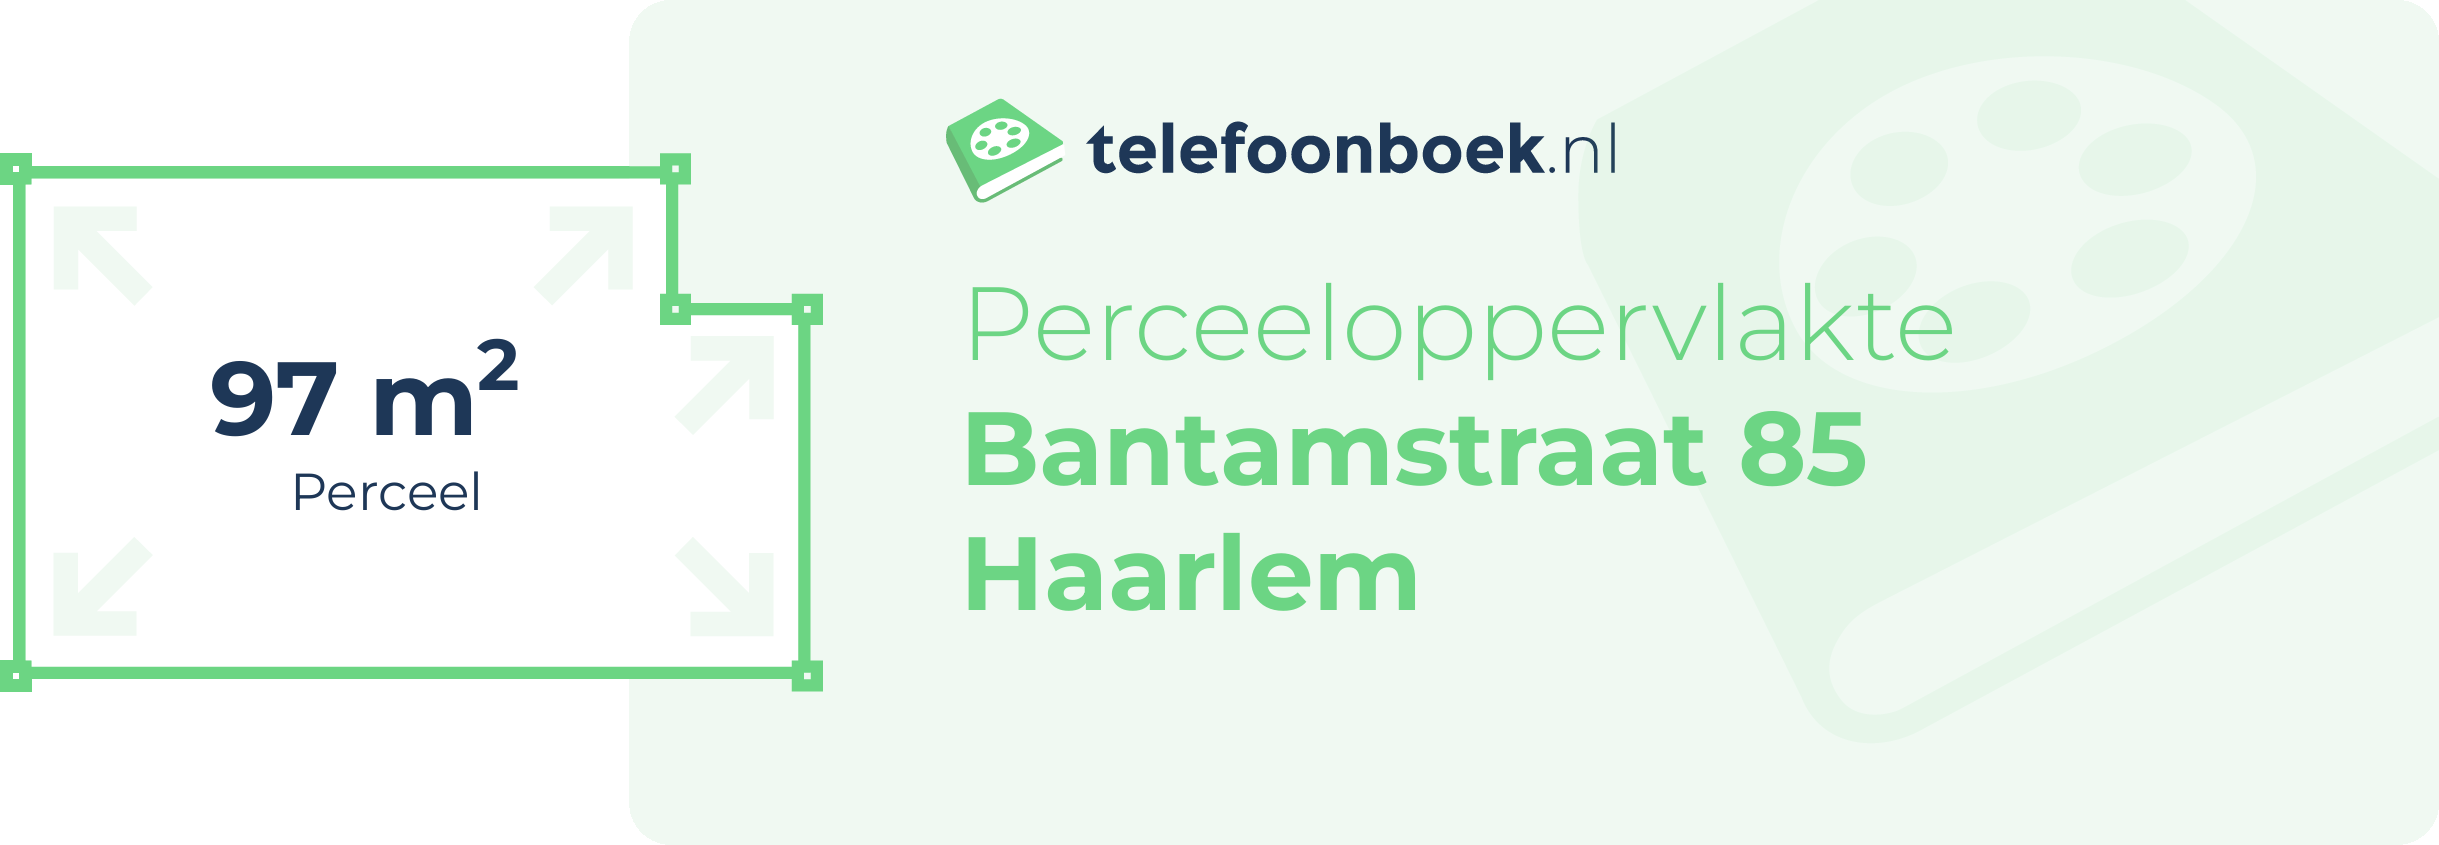 Perceeloppervlakte Bantamstraat 85 Haarlem